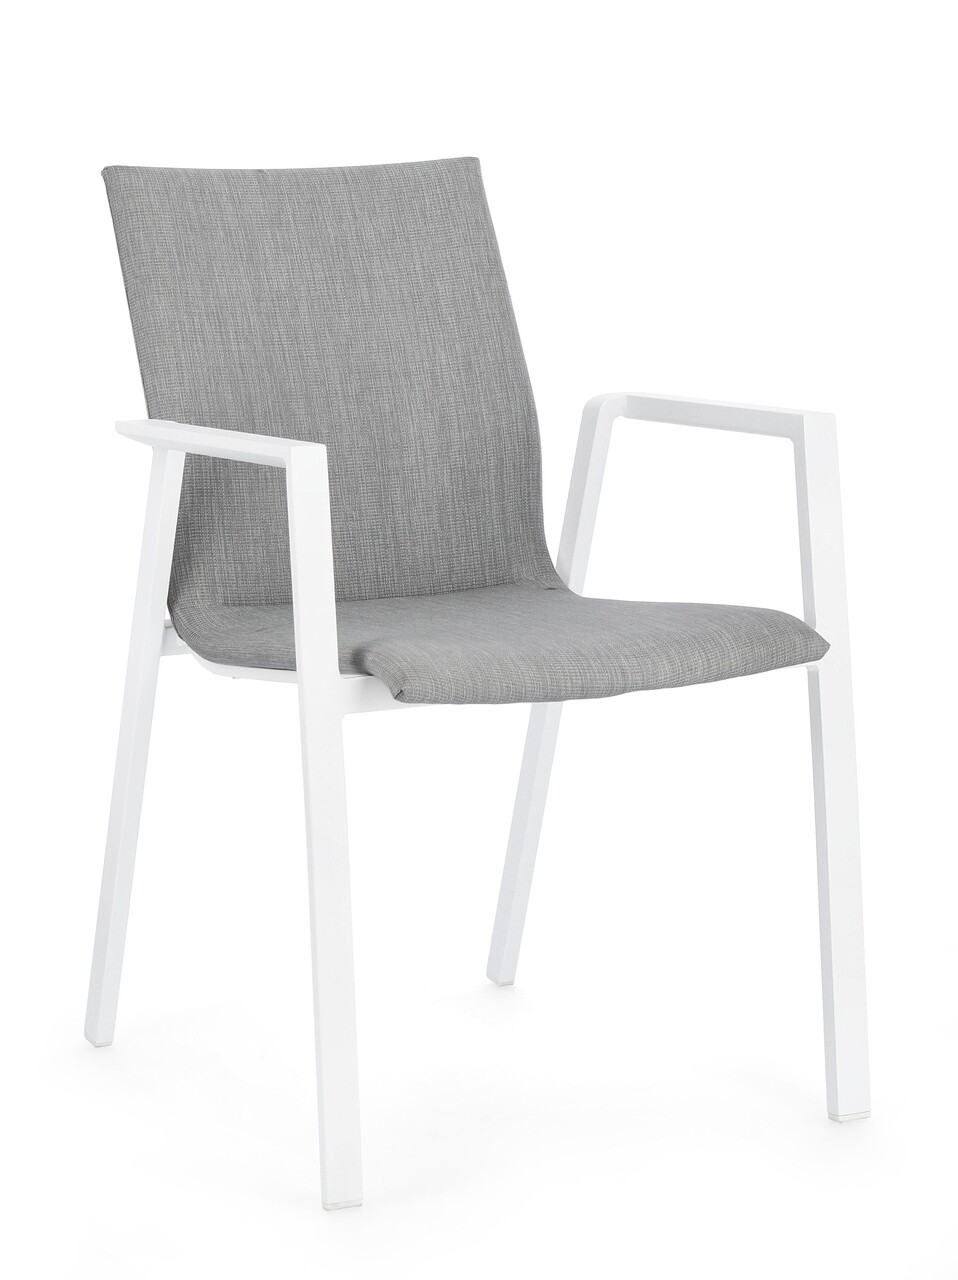 Odeon kerti szék, bizzotto, 55.5 x 60 x 83 cm, alumínium/textilén/ofelin szövet, fehér/szürke